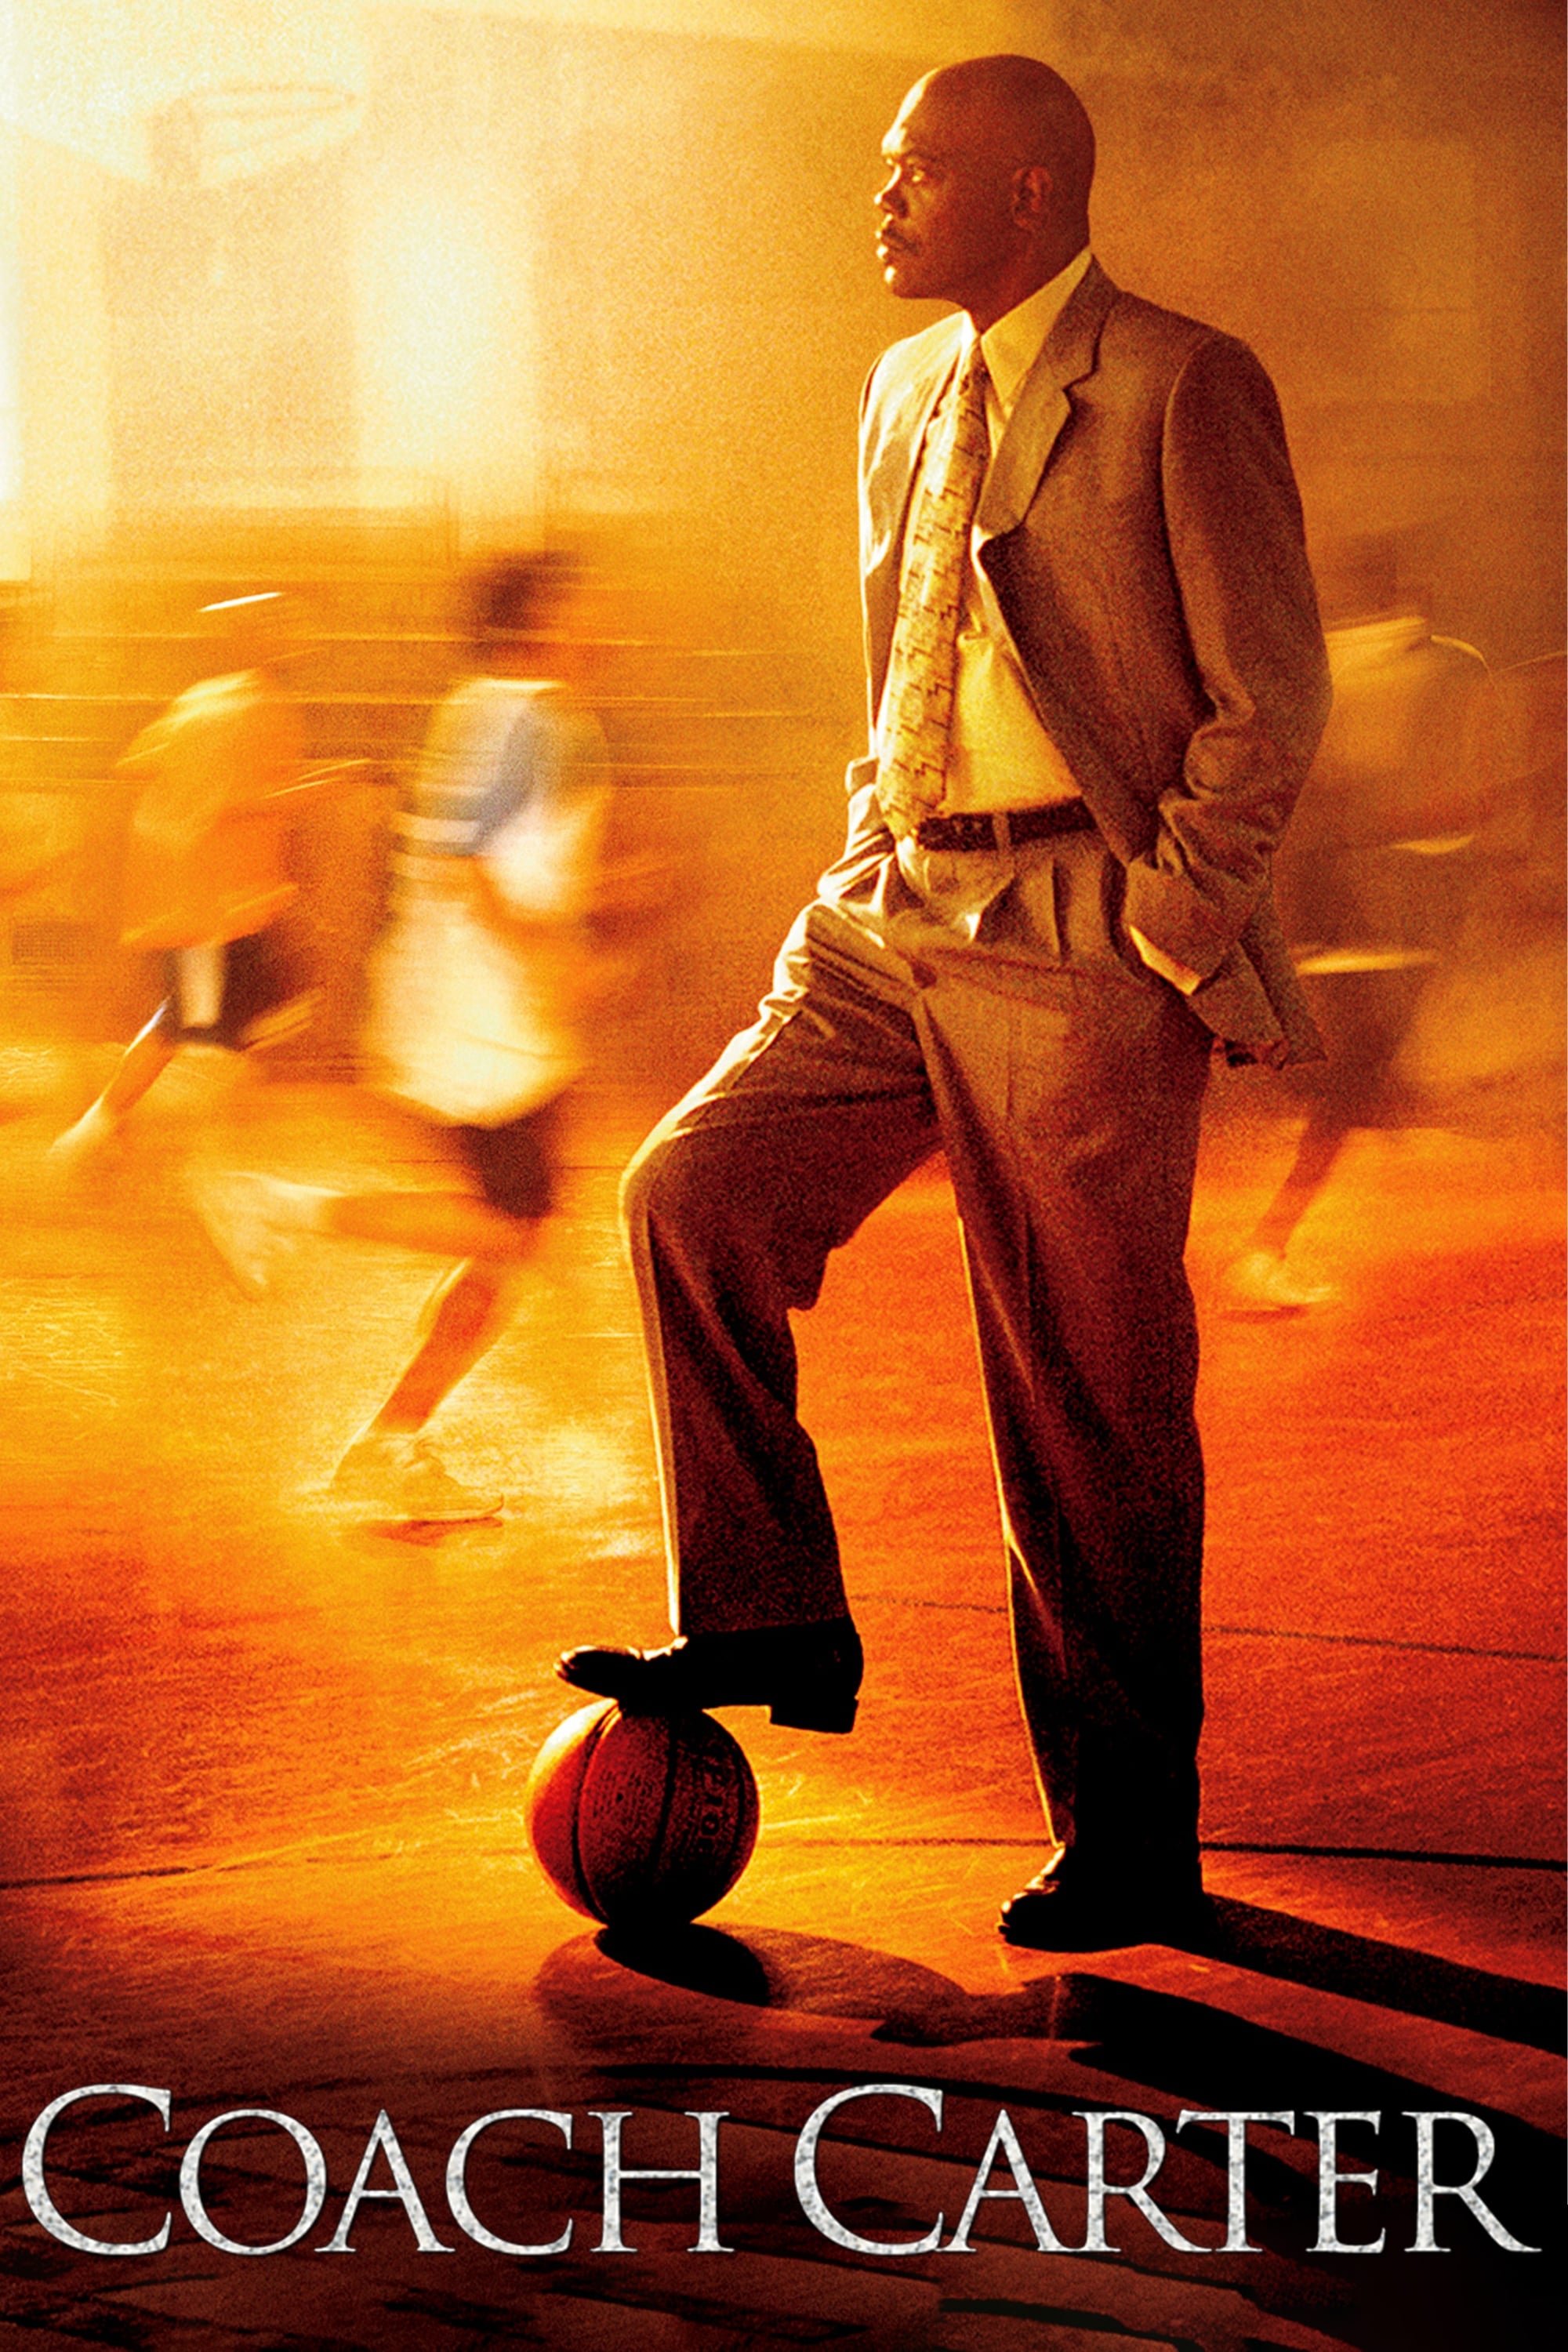 Coach Carter: Treino para a Vida (2005)